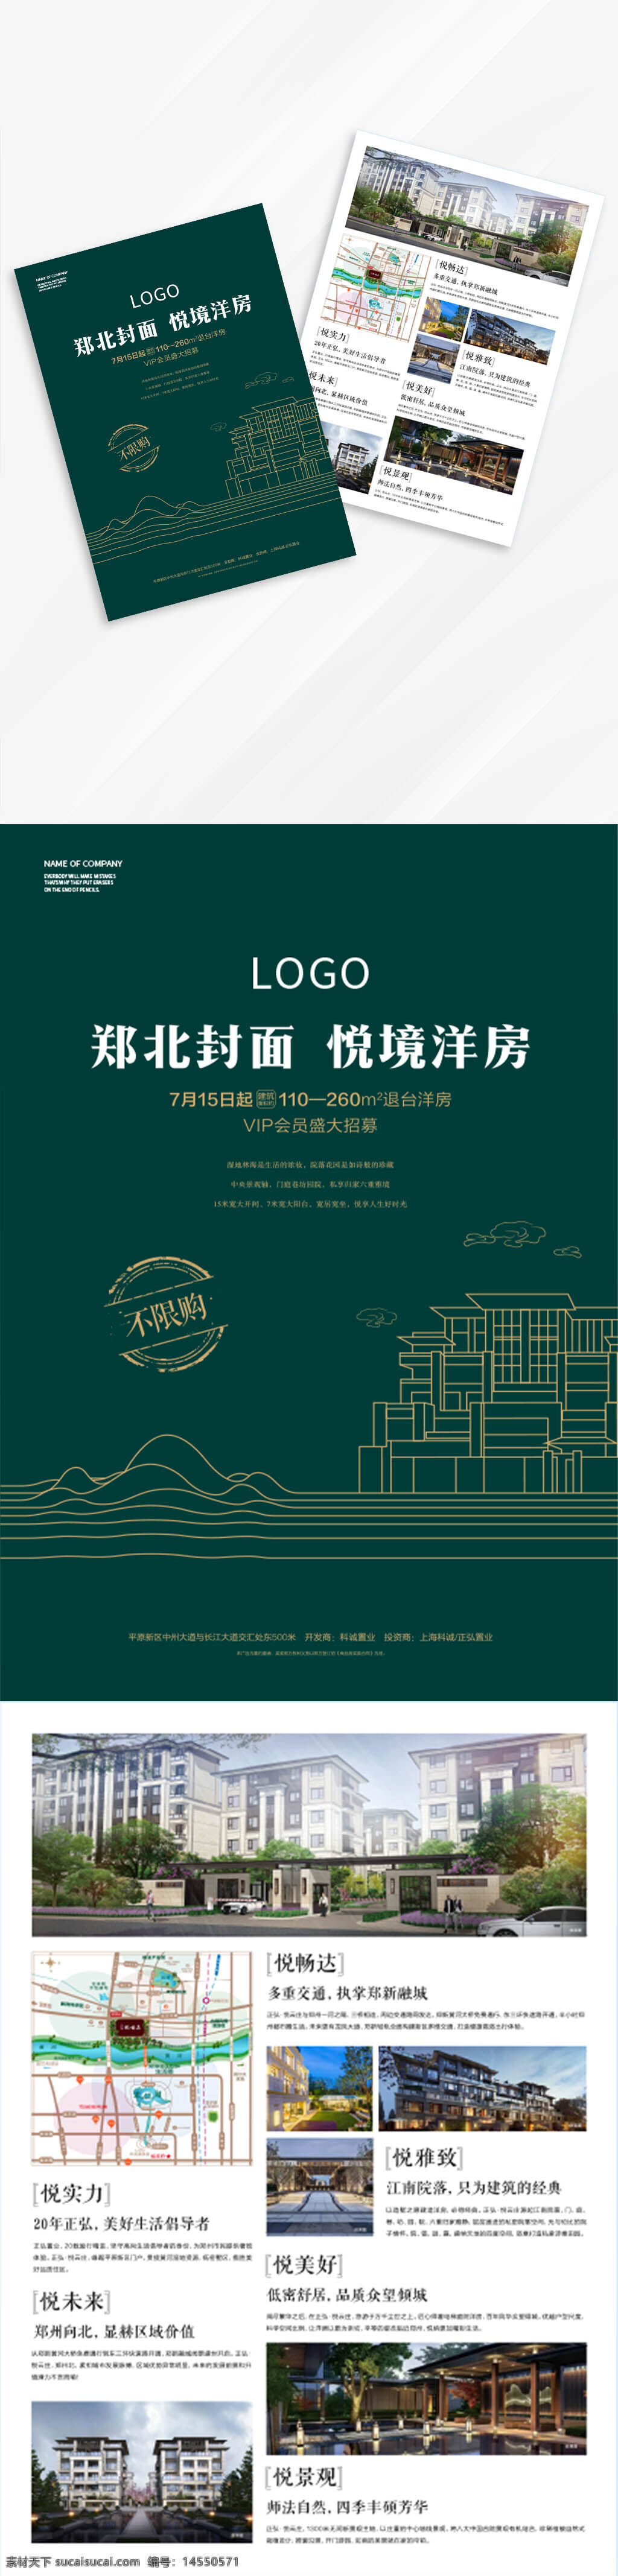 新中式 地产单页 海报 宣传单页 绿色单页 别墅 主画面 楼体线稿 山水线稿